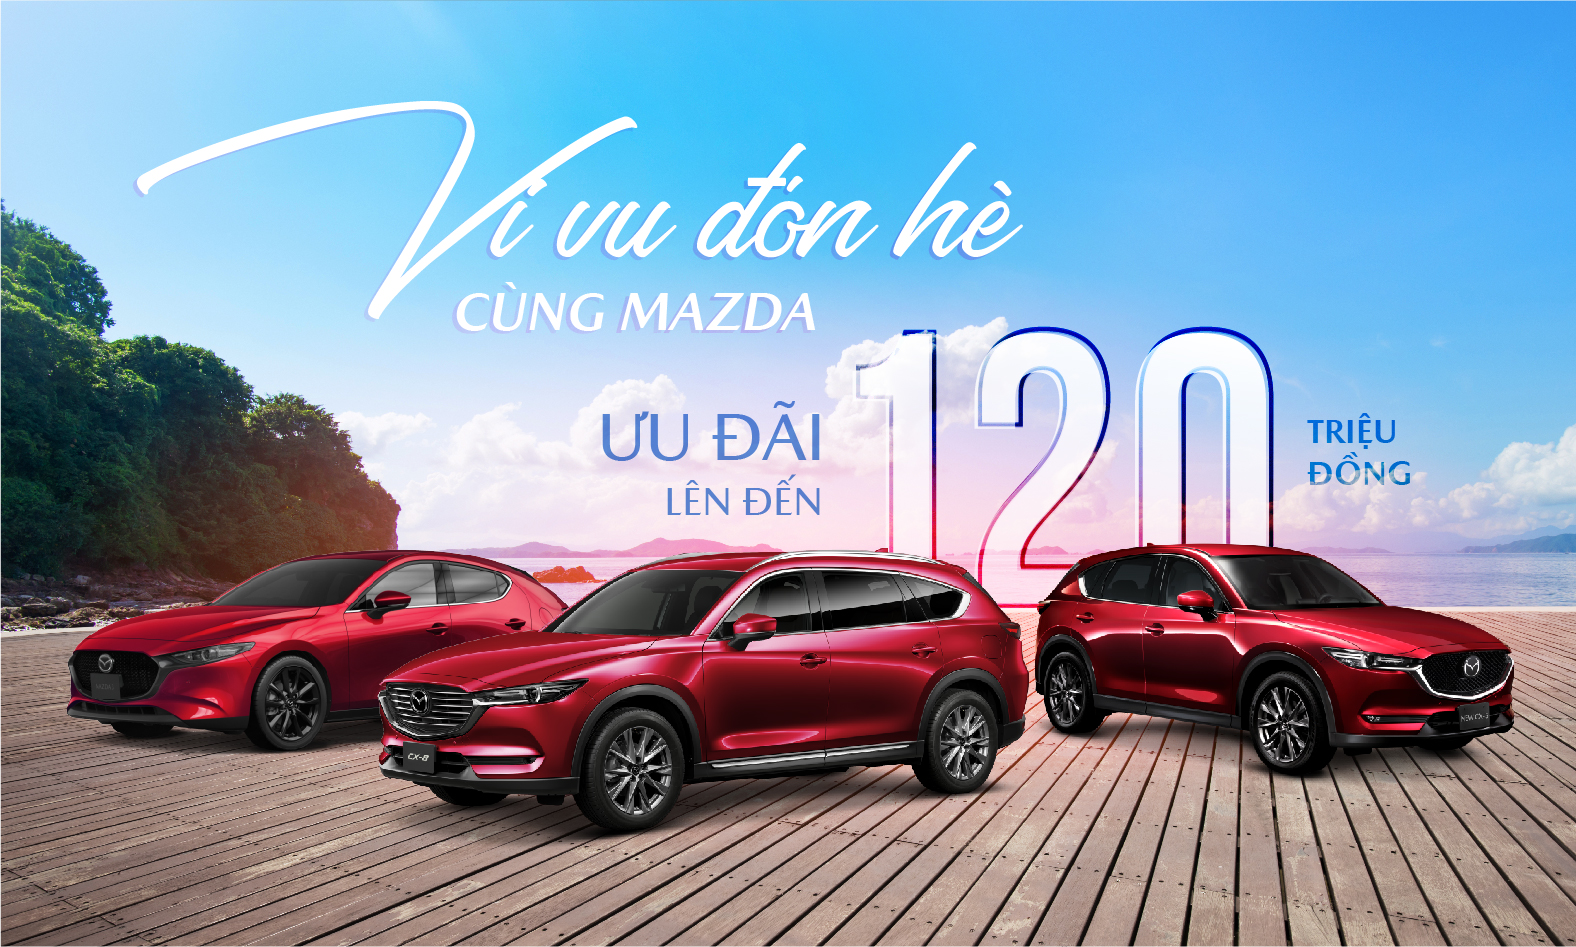 Mazda du lịch 30/4: Tháng Tư đến rồi, hãy cùng Mazda đồng hành trên những chuyến hành trình vui tươi cùng gia đình và bạn bè. Với đội ngũ xe du lịch Mazda chất lượng hàng đầu, bạn sẽ được trải nghiệm những cung đường đẹp nhất và hấp dẫn nhất cả nước. Hãy để Mazda mang đến cho bạn một kỳ nghỉ lễ đáng nhớ!